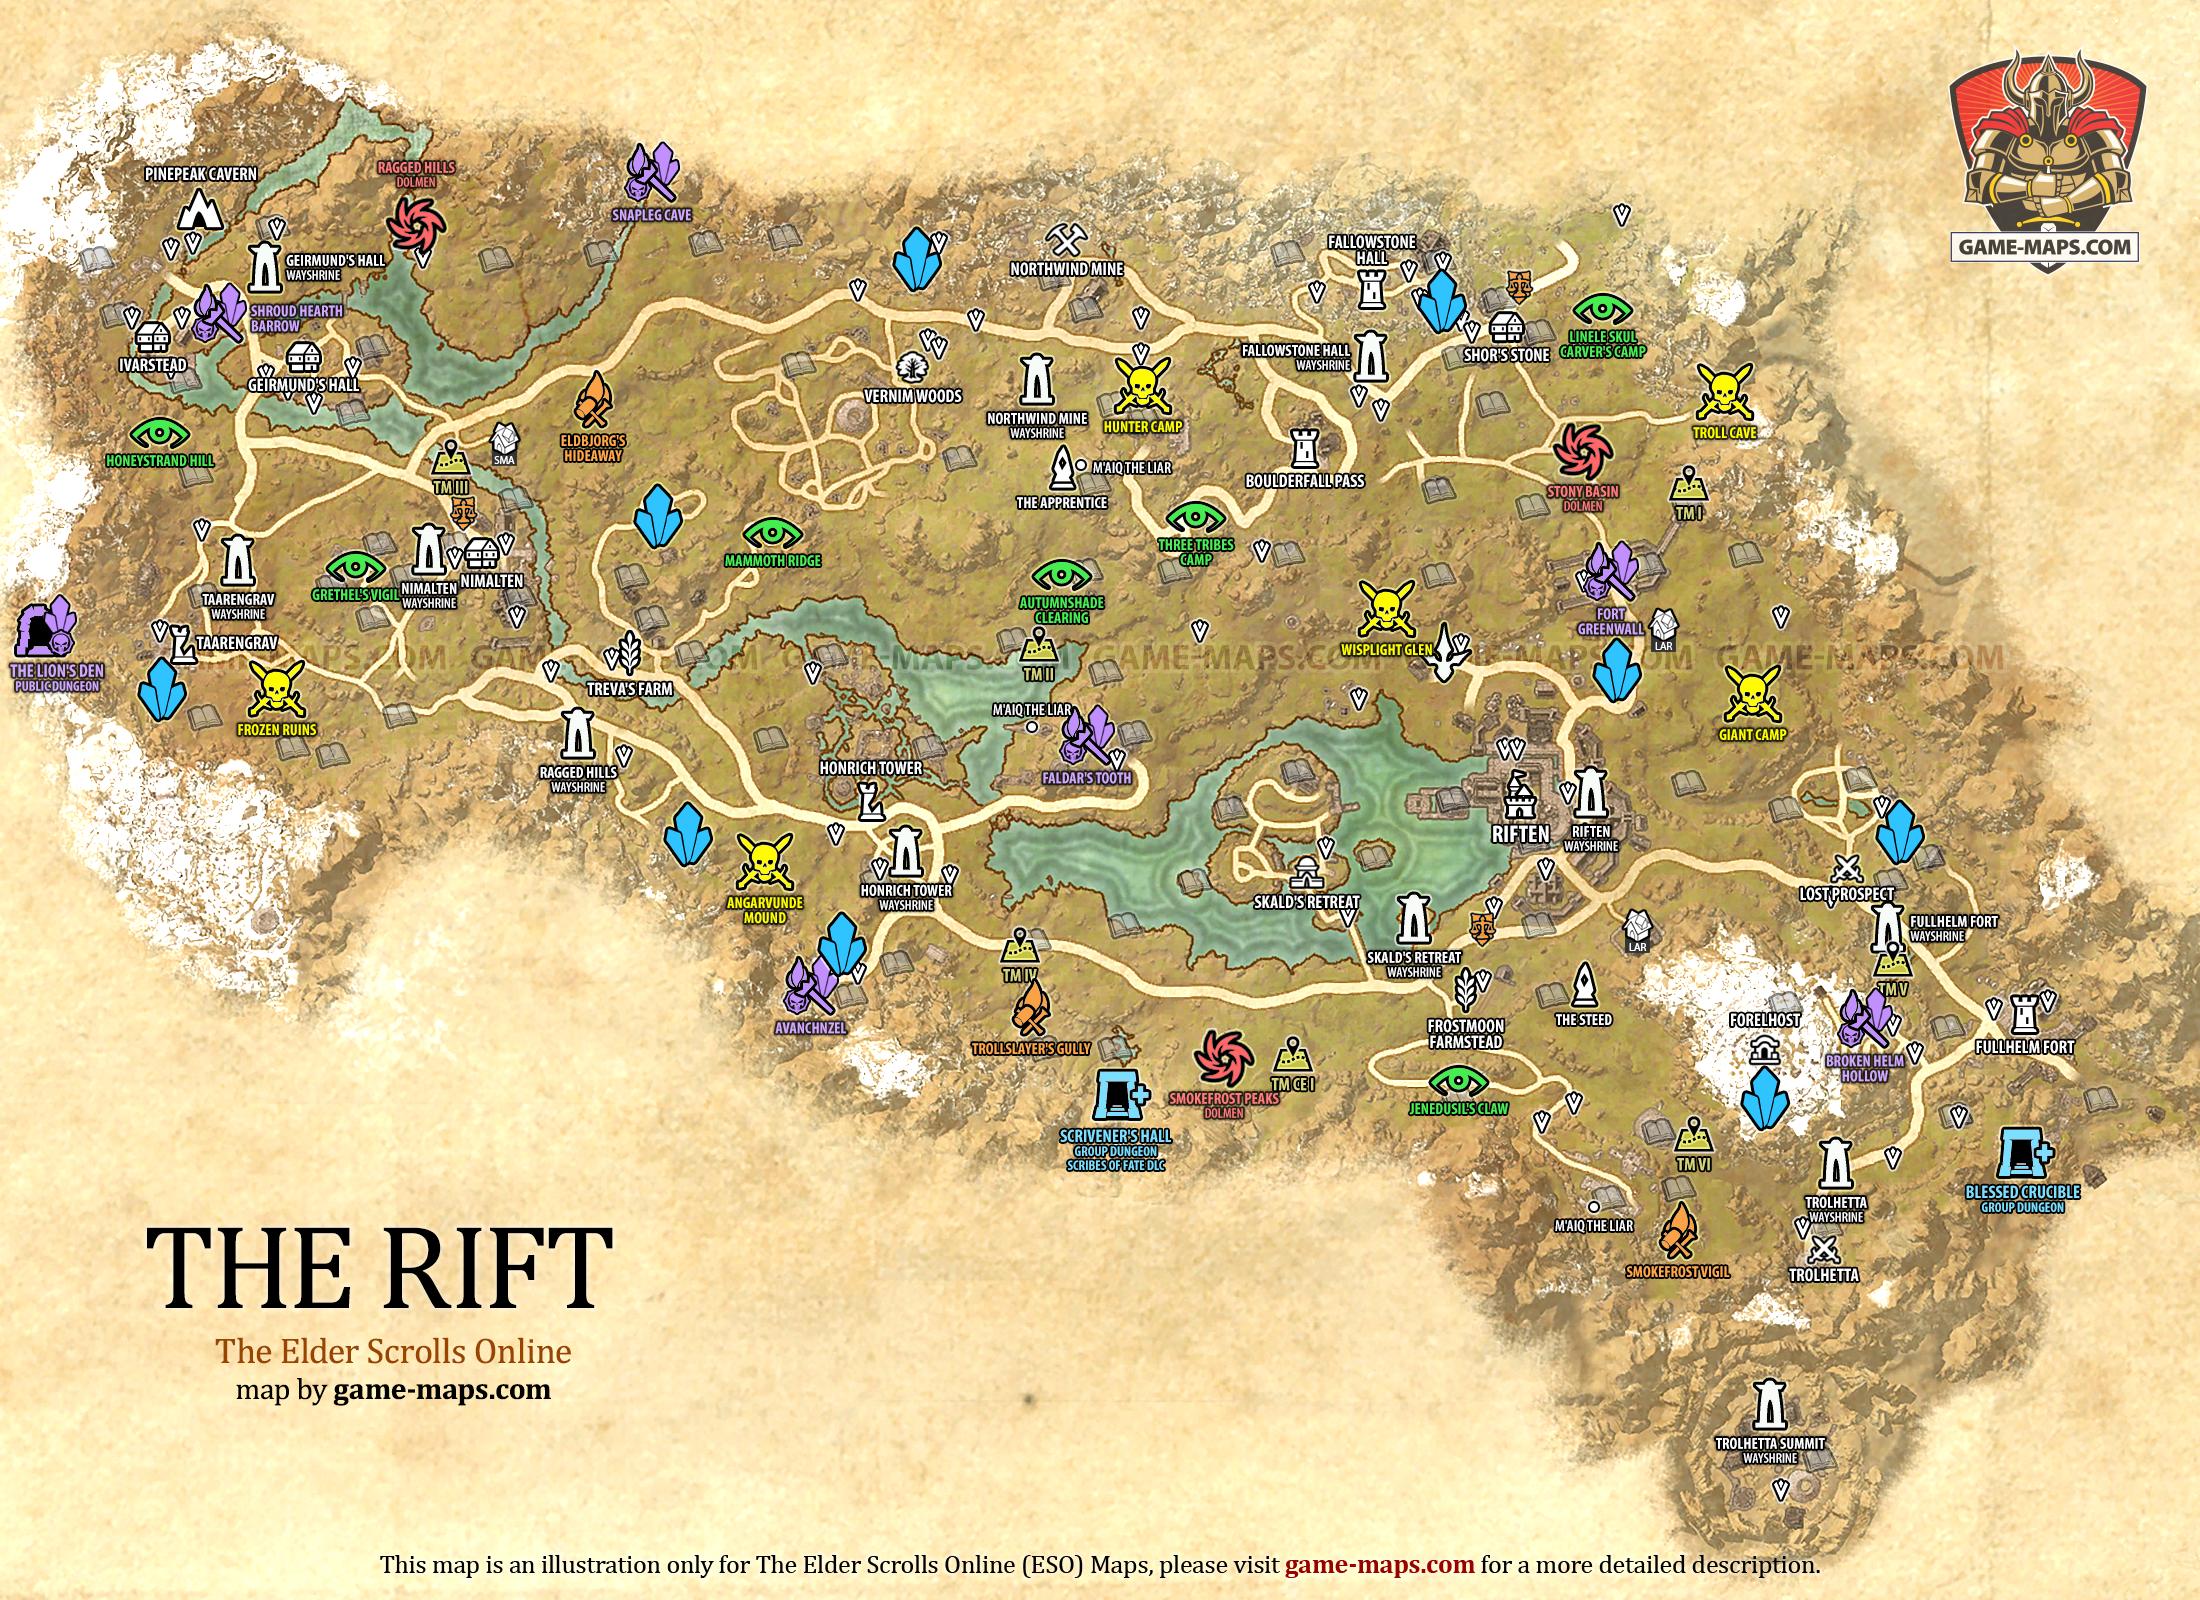 The Rift Map for The Elder Scrolls Online, Base Alliance Zone (ESO).